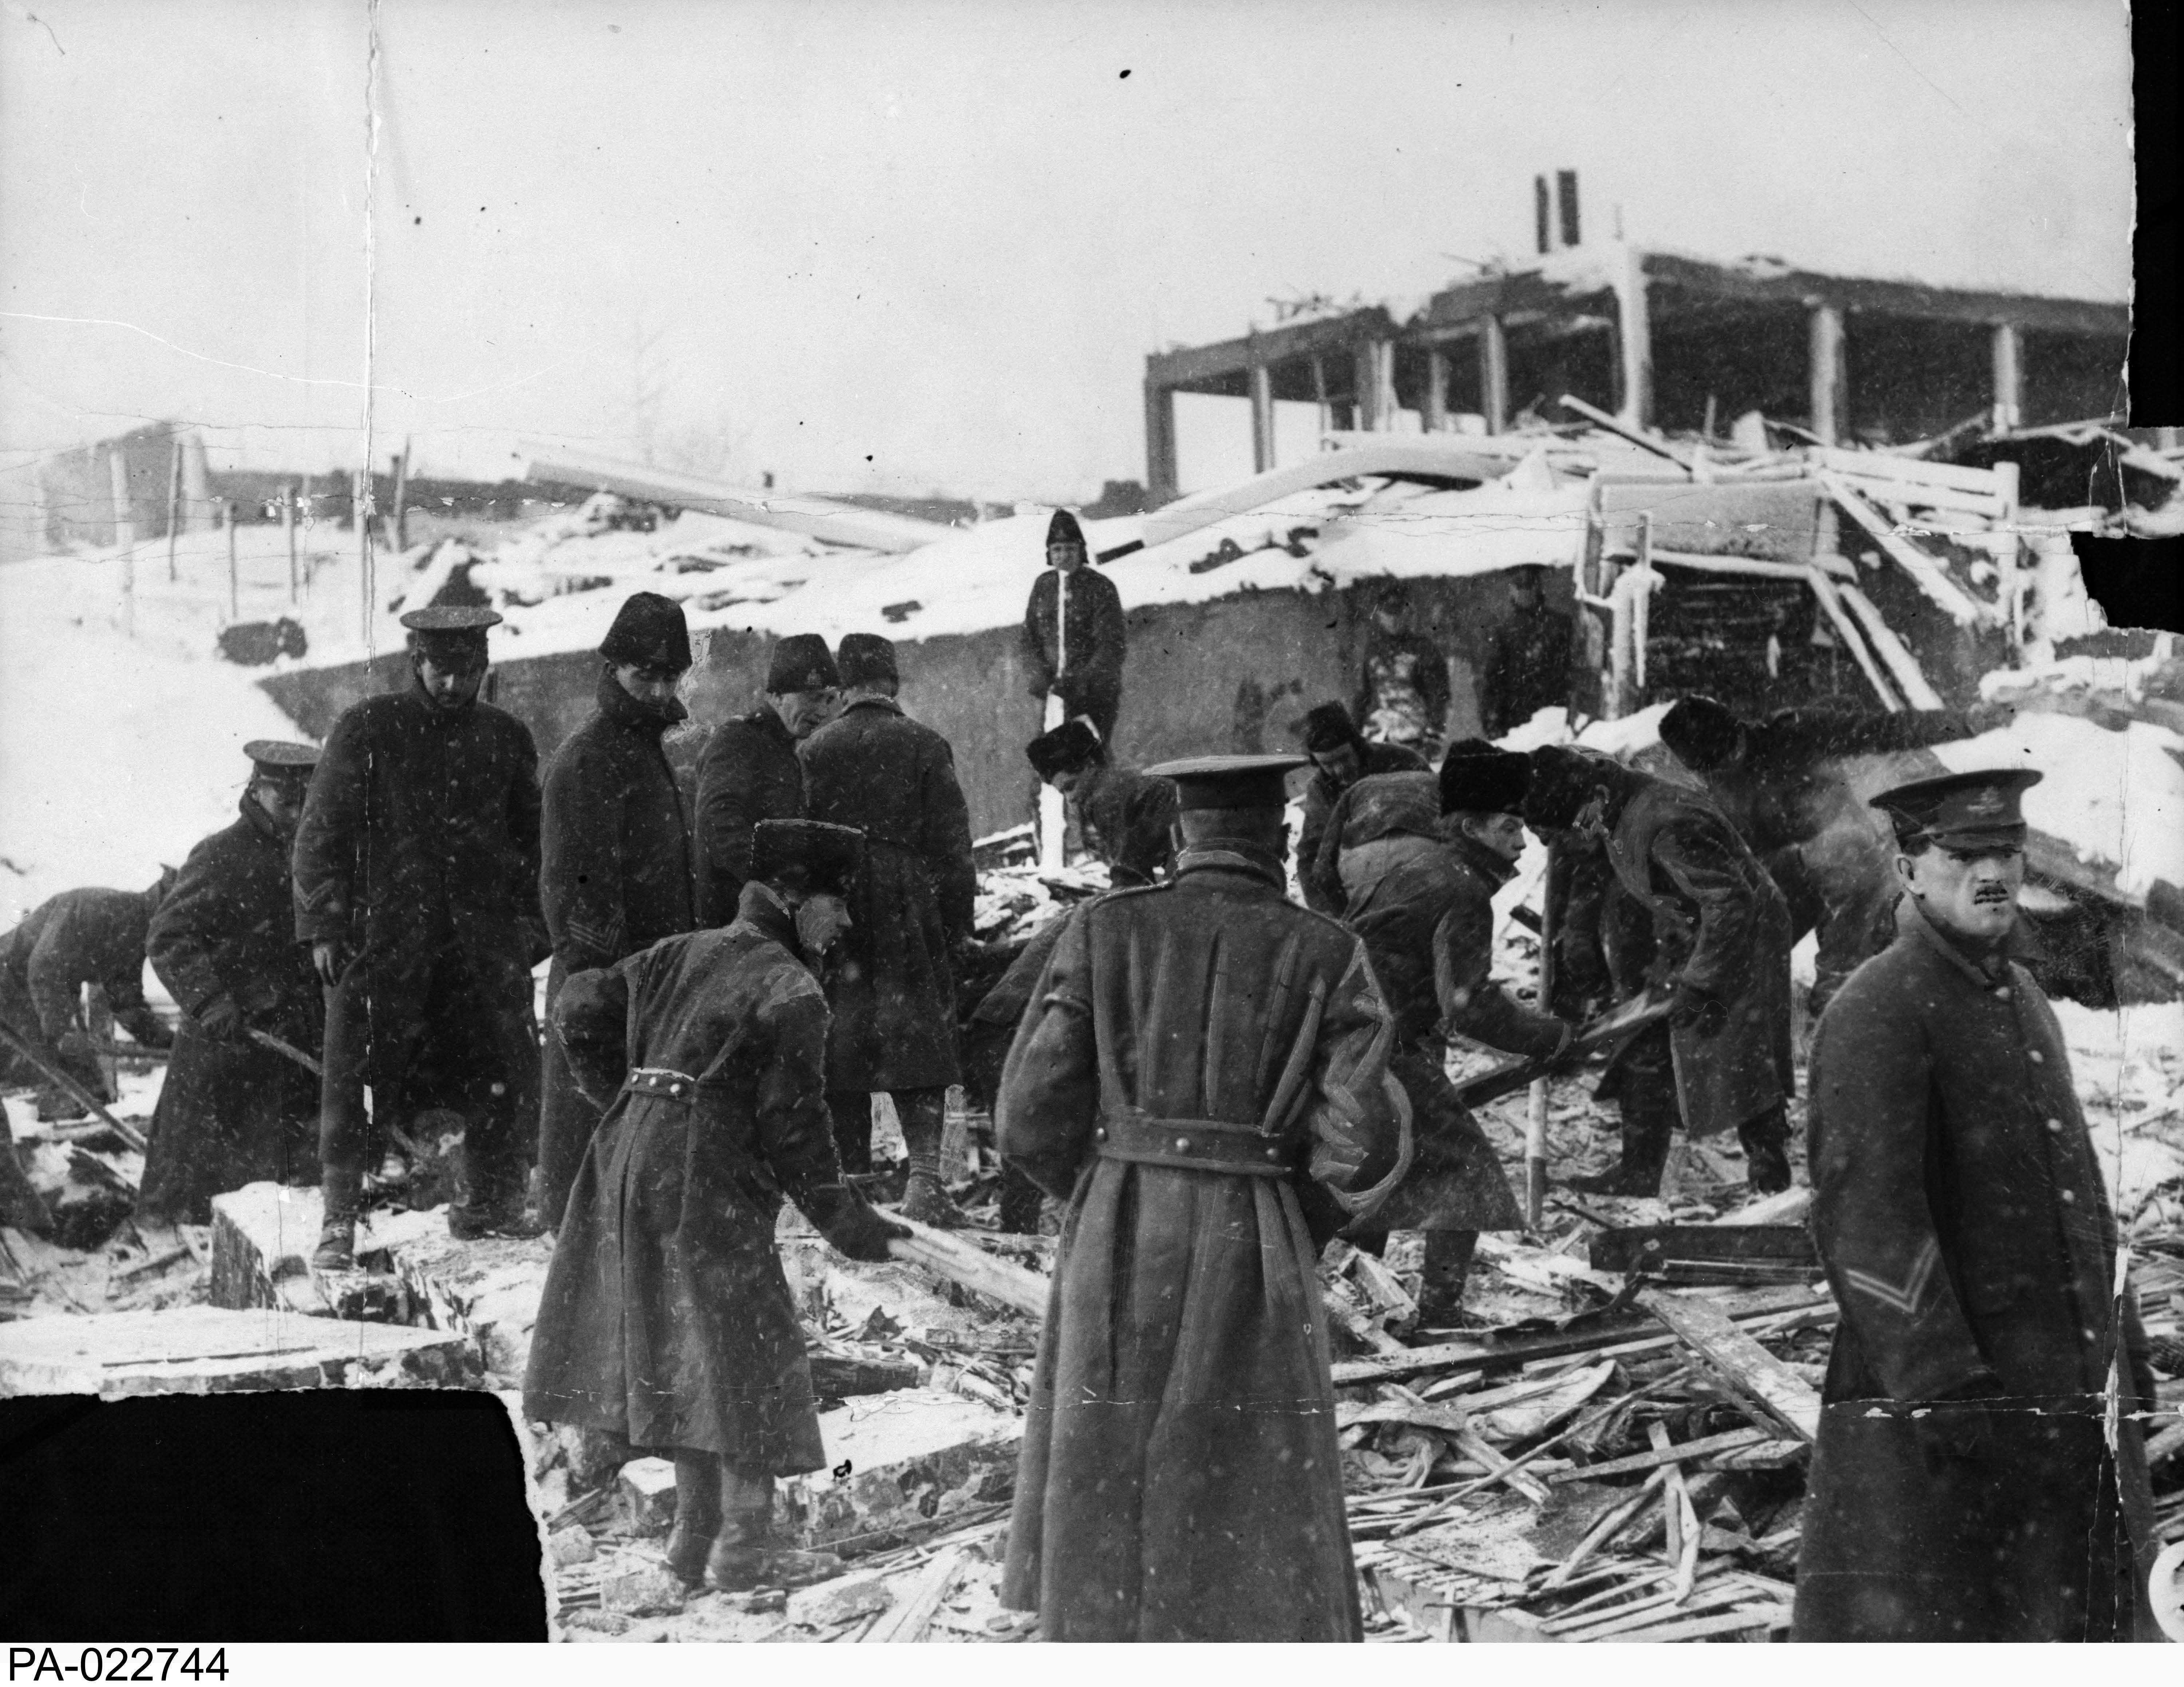 Photographie en noir et blanc – Des soldats fouillent dans les décombres, tentant de retrouver des victimes de l’explosion. Ils portent de longs manteaux d’hiver. Le squelette d’un édifice est visible sur la colline derrière eux.